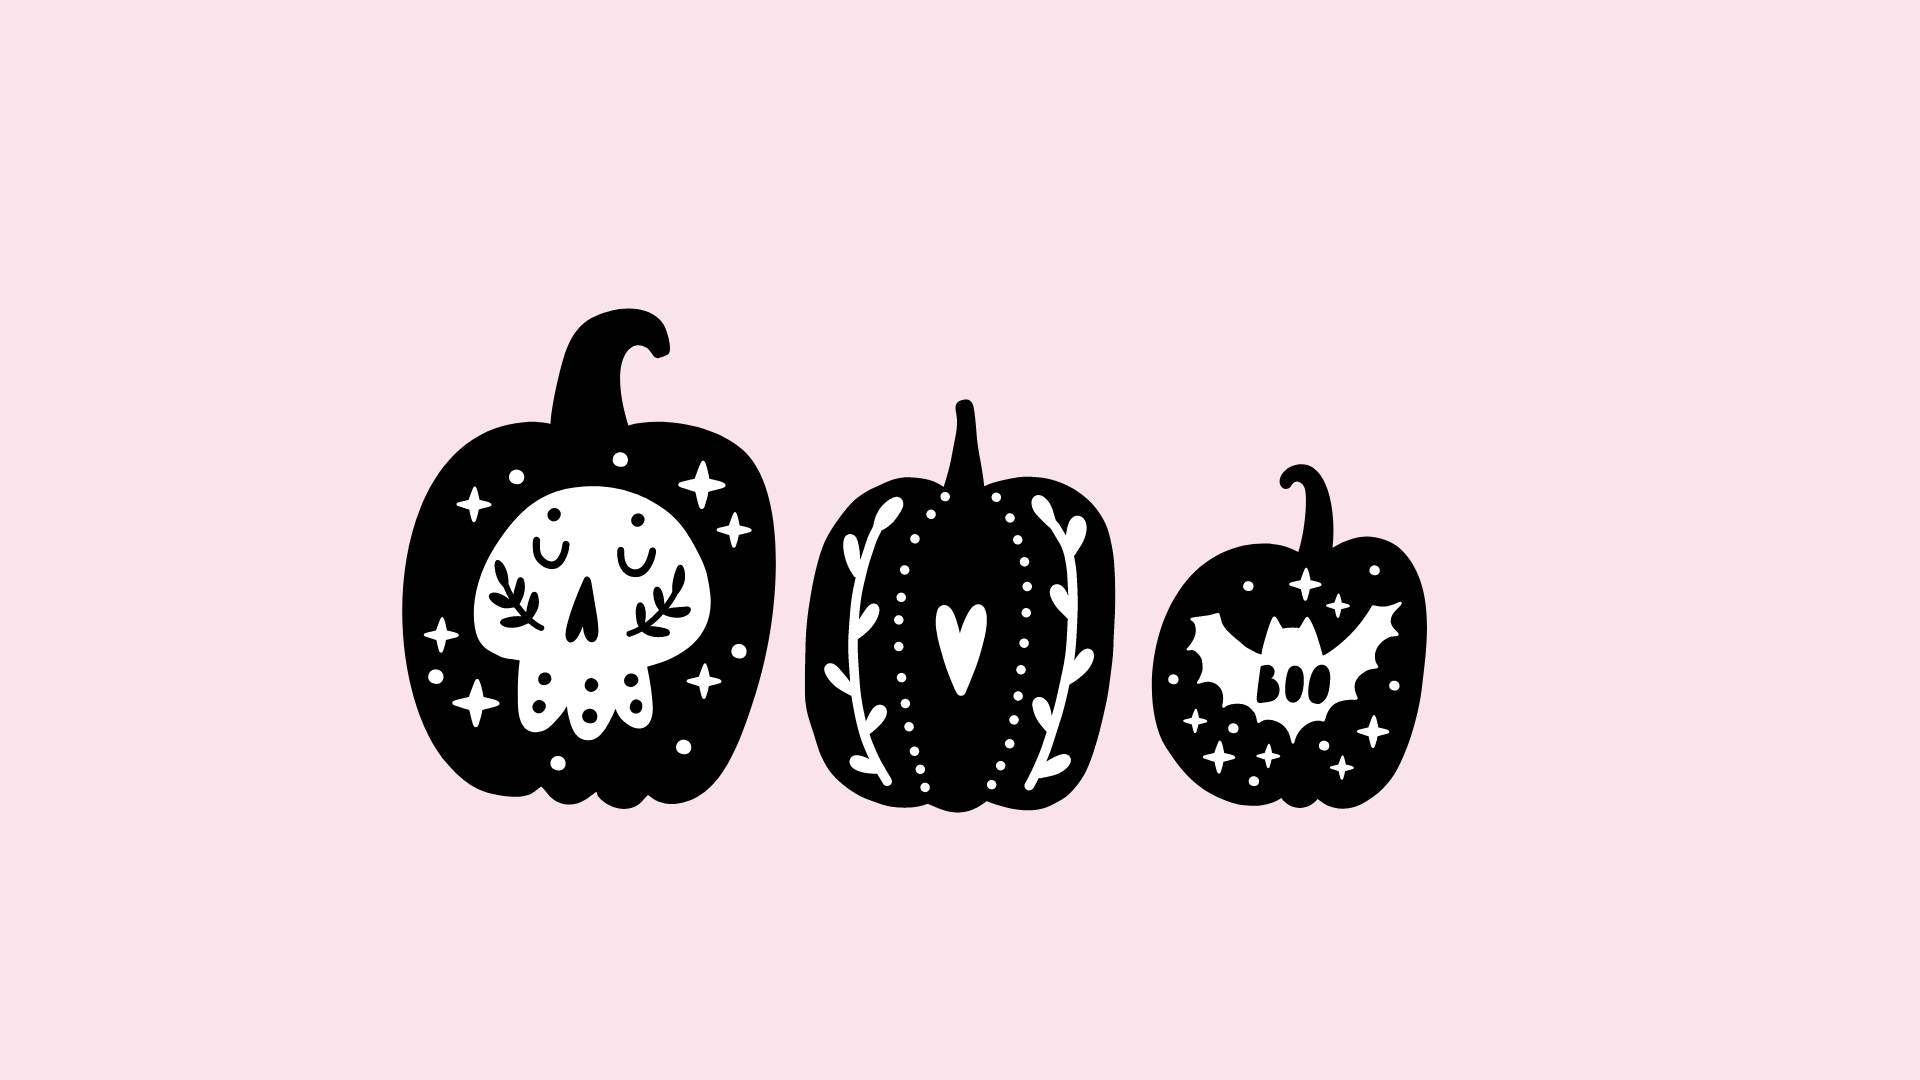 Cute Aesthetic Halloween Pumpkins Wallpaper